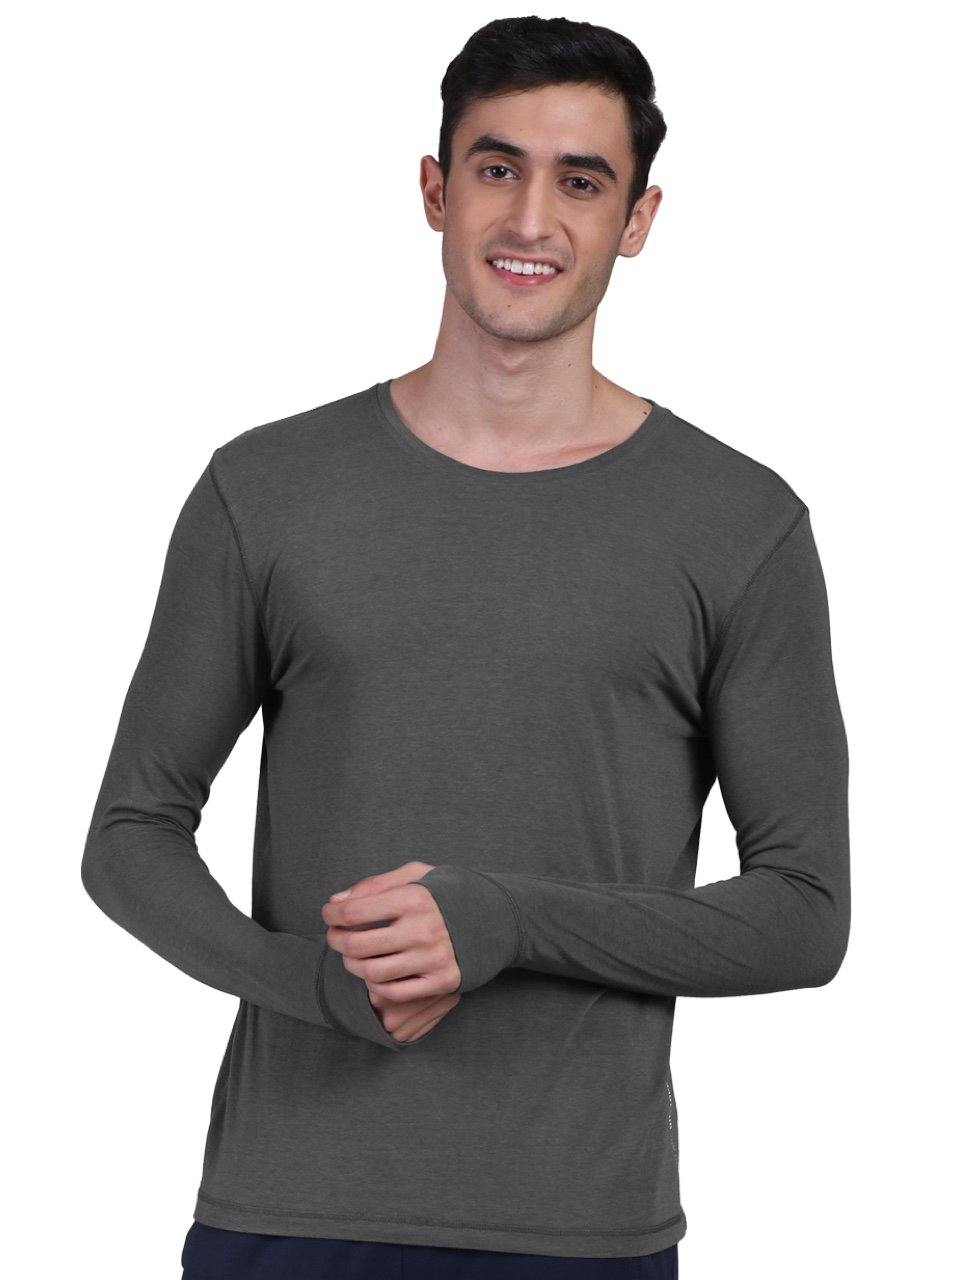 Men's Organic Bamboo Skins (Full Sleeves-Undershirt, Loungewear, Sleepwear) - Pack of 2